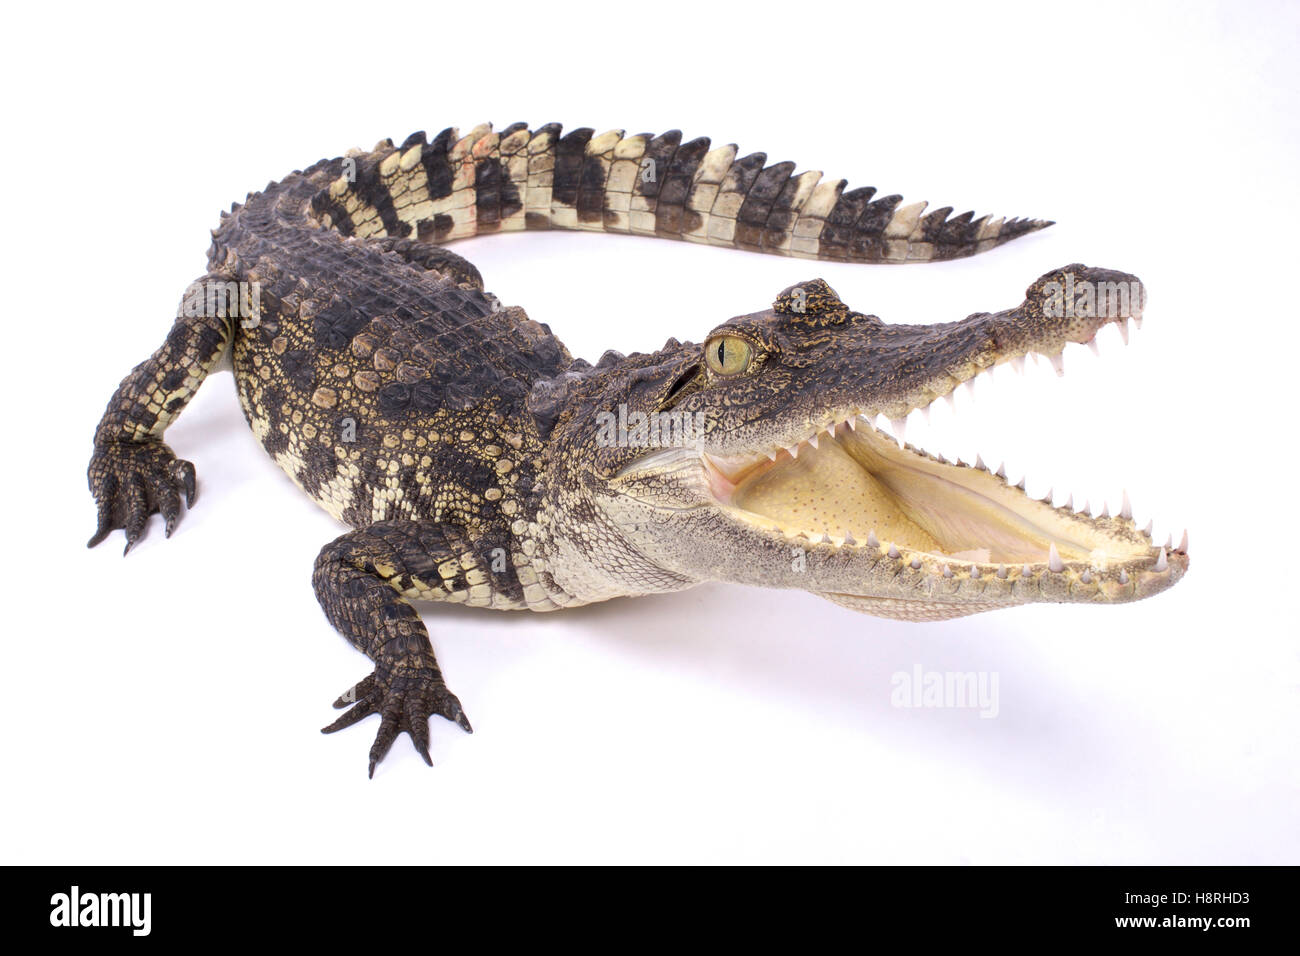 Siameses,cocodrilos Crocodylus siamensis Foto de stock